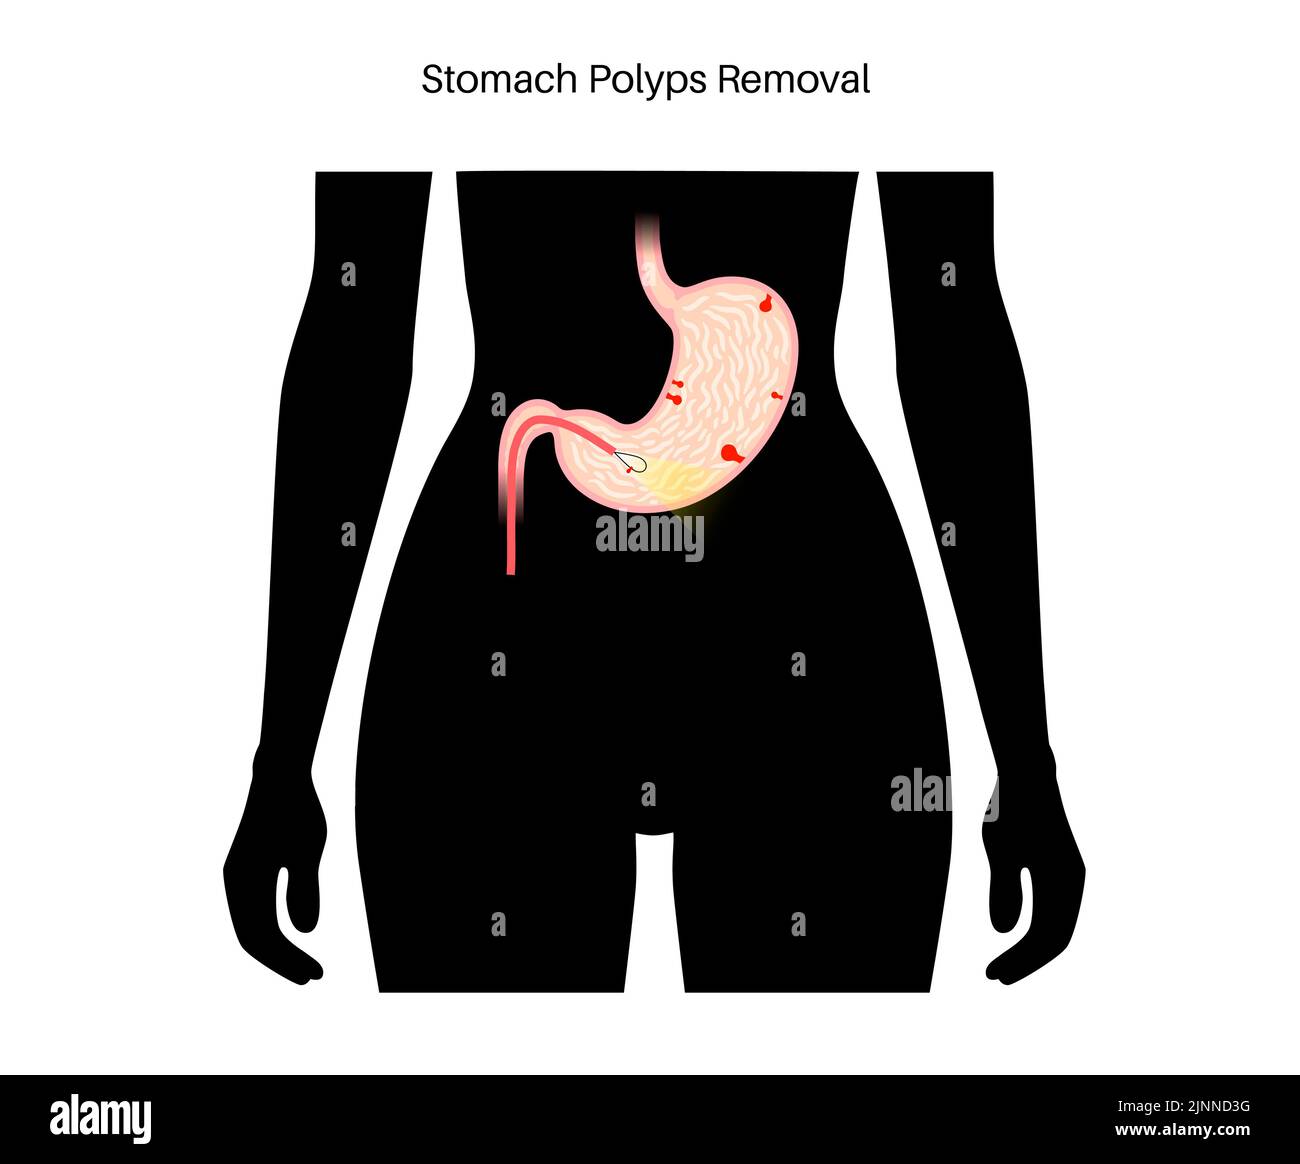 Extracción de pólipos estomacales, ilustración. Foto de stock